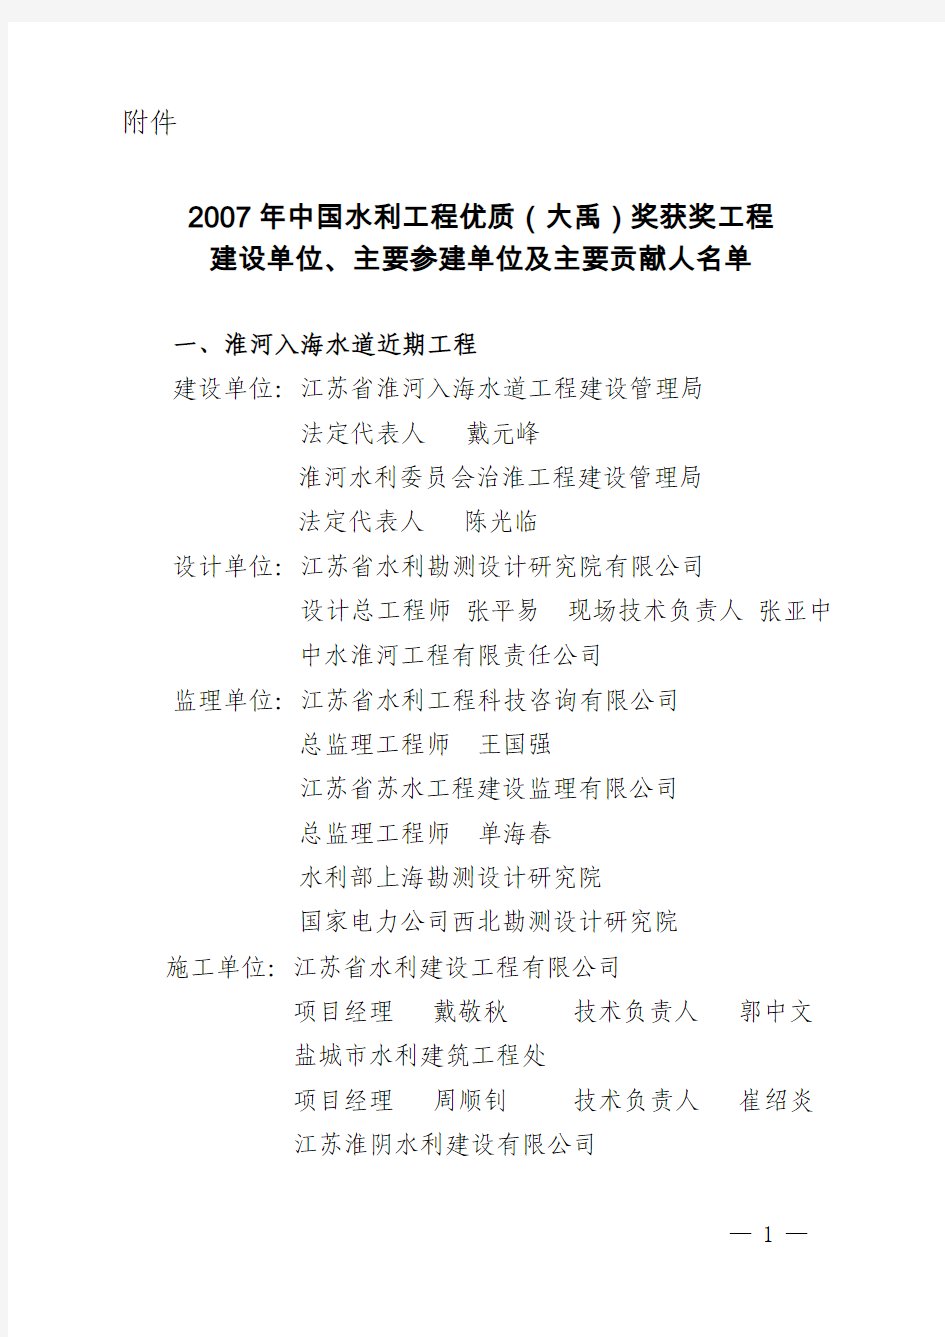 2007年中国水利工程优质(大禹)奖获奖工程